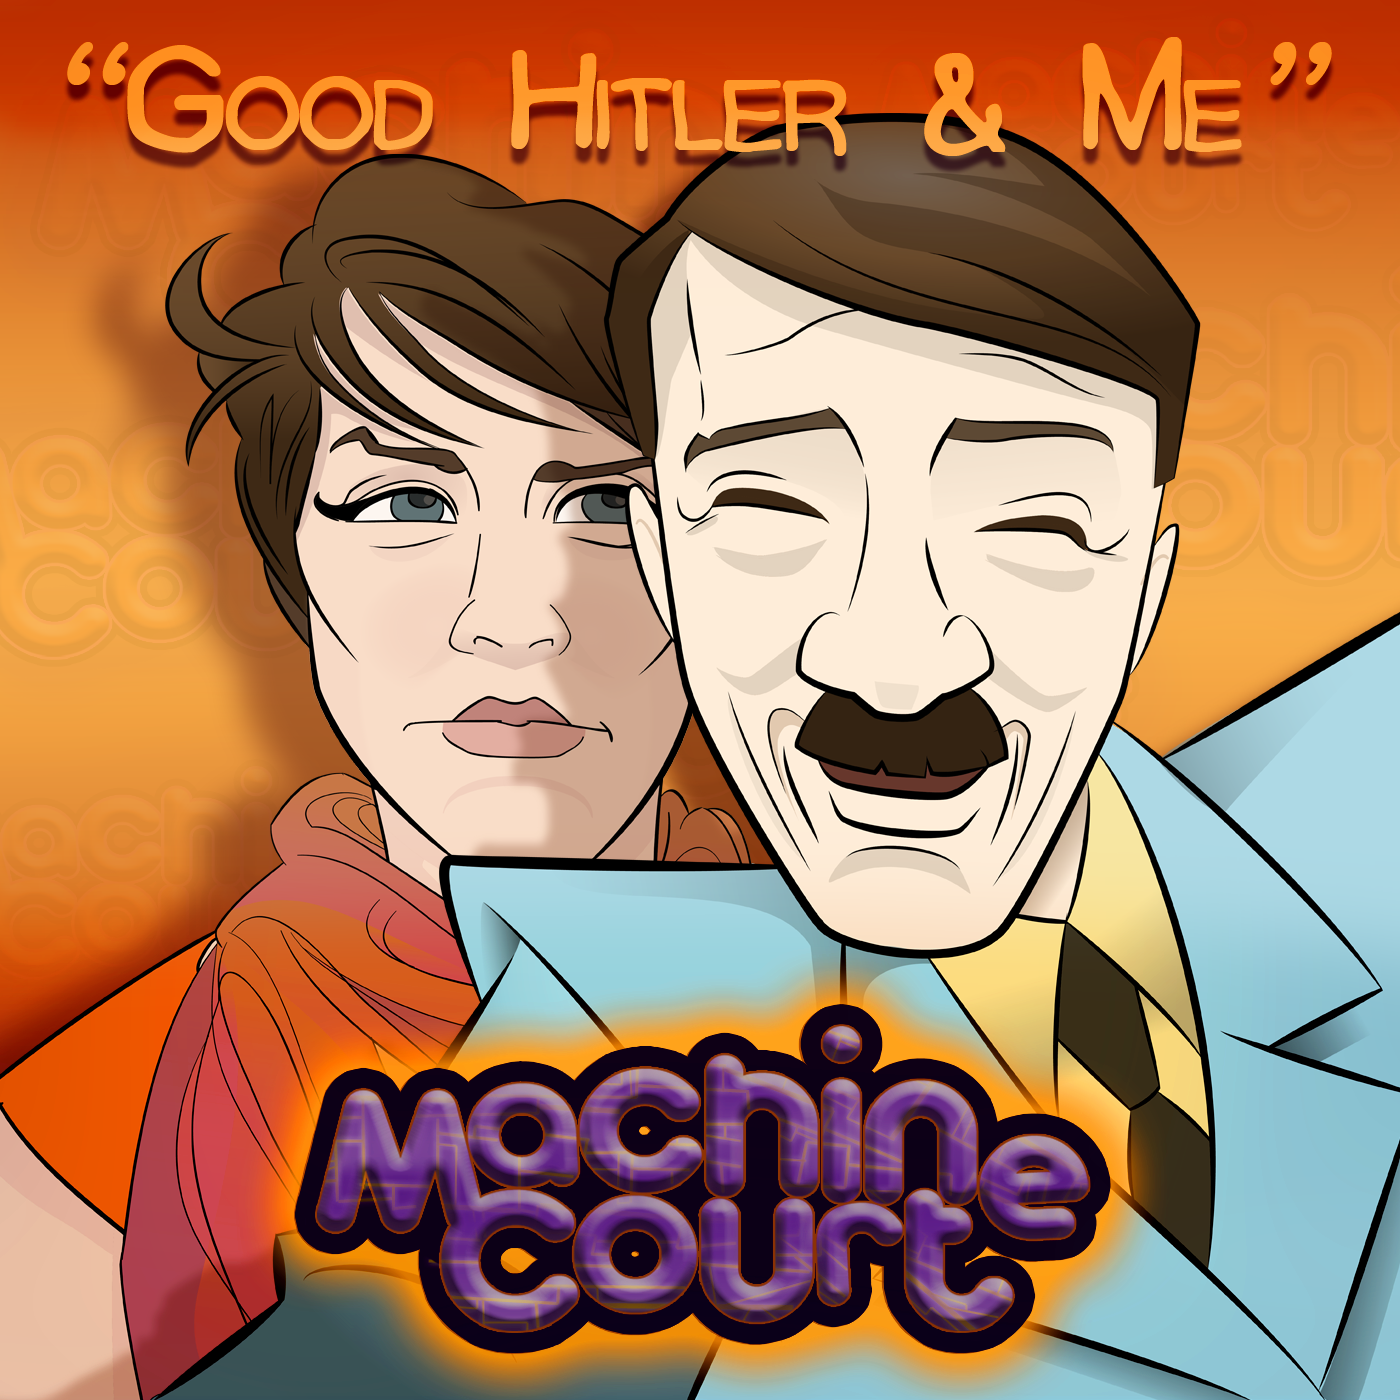 4.09 “Good Hitler and Me”